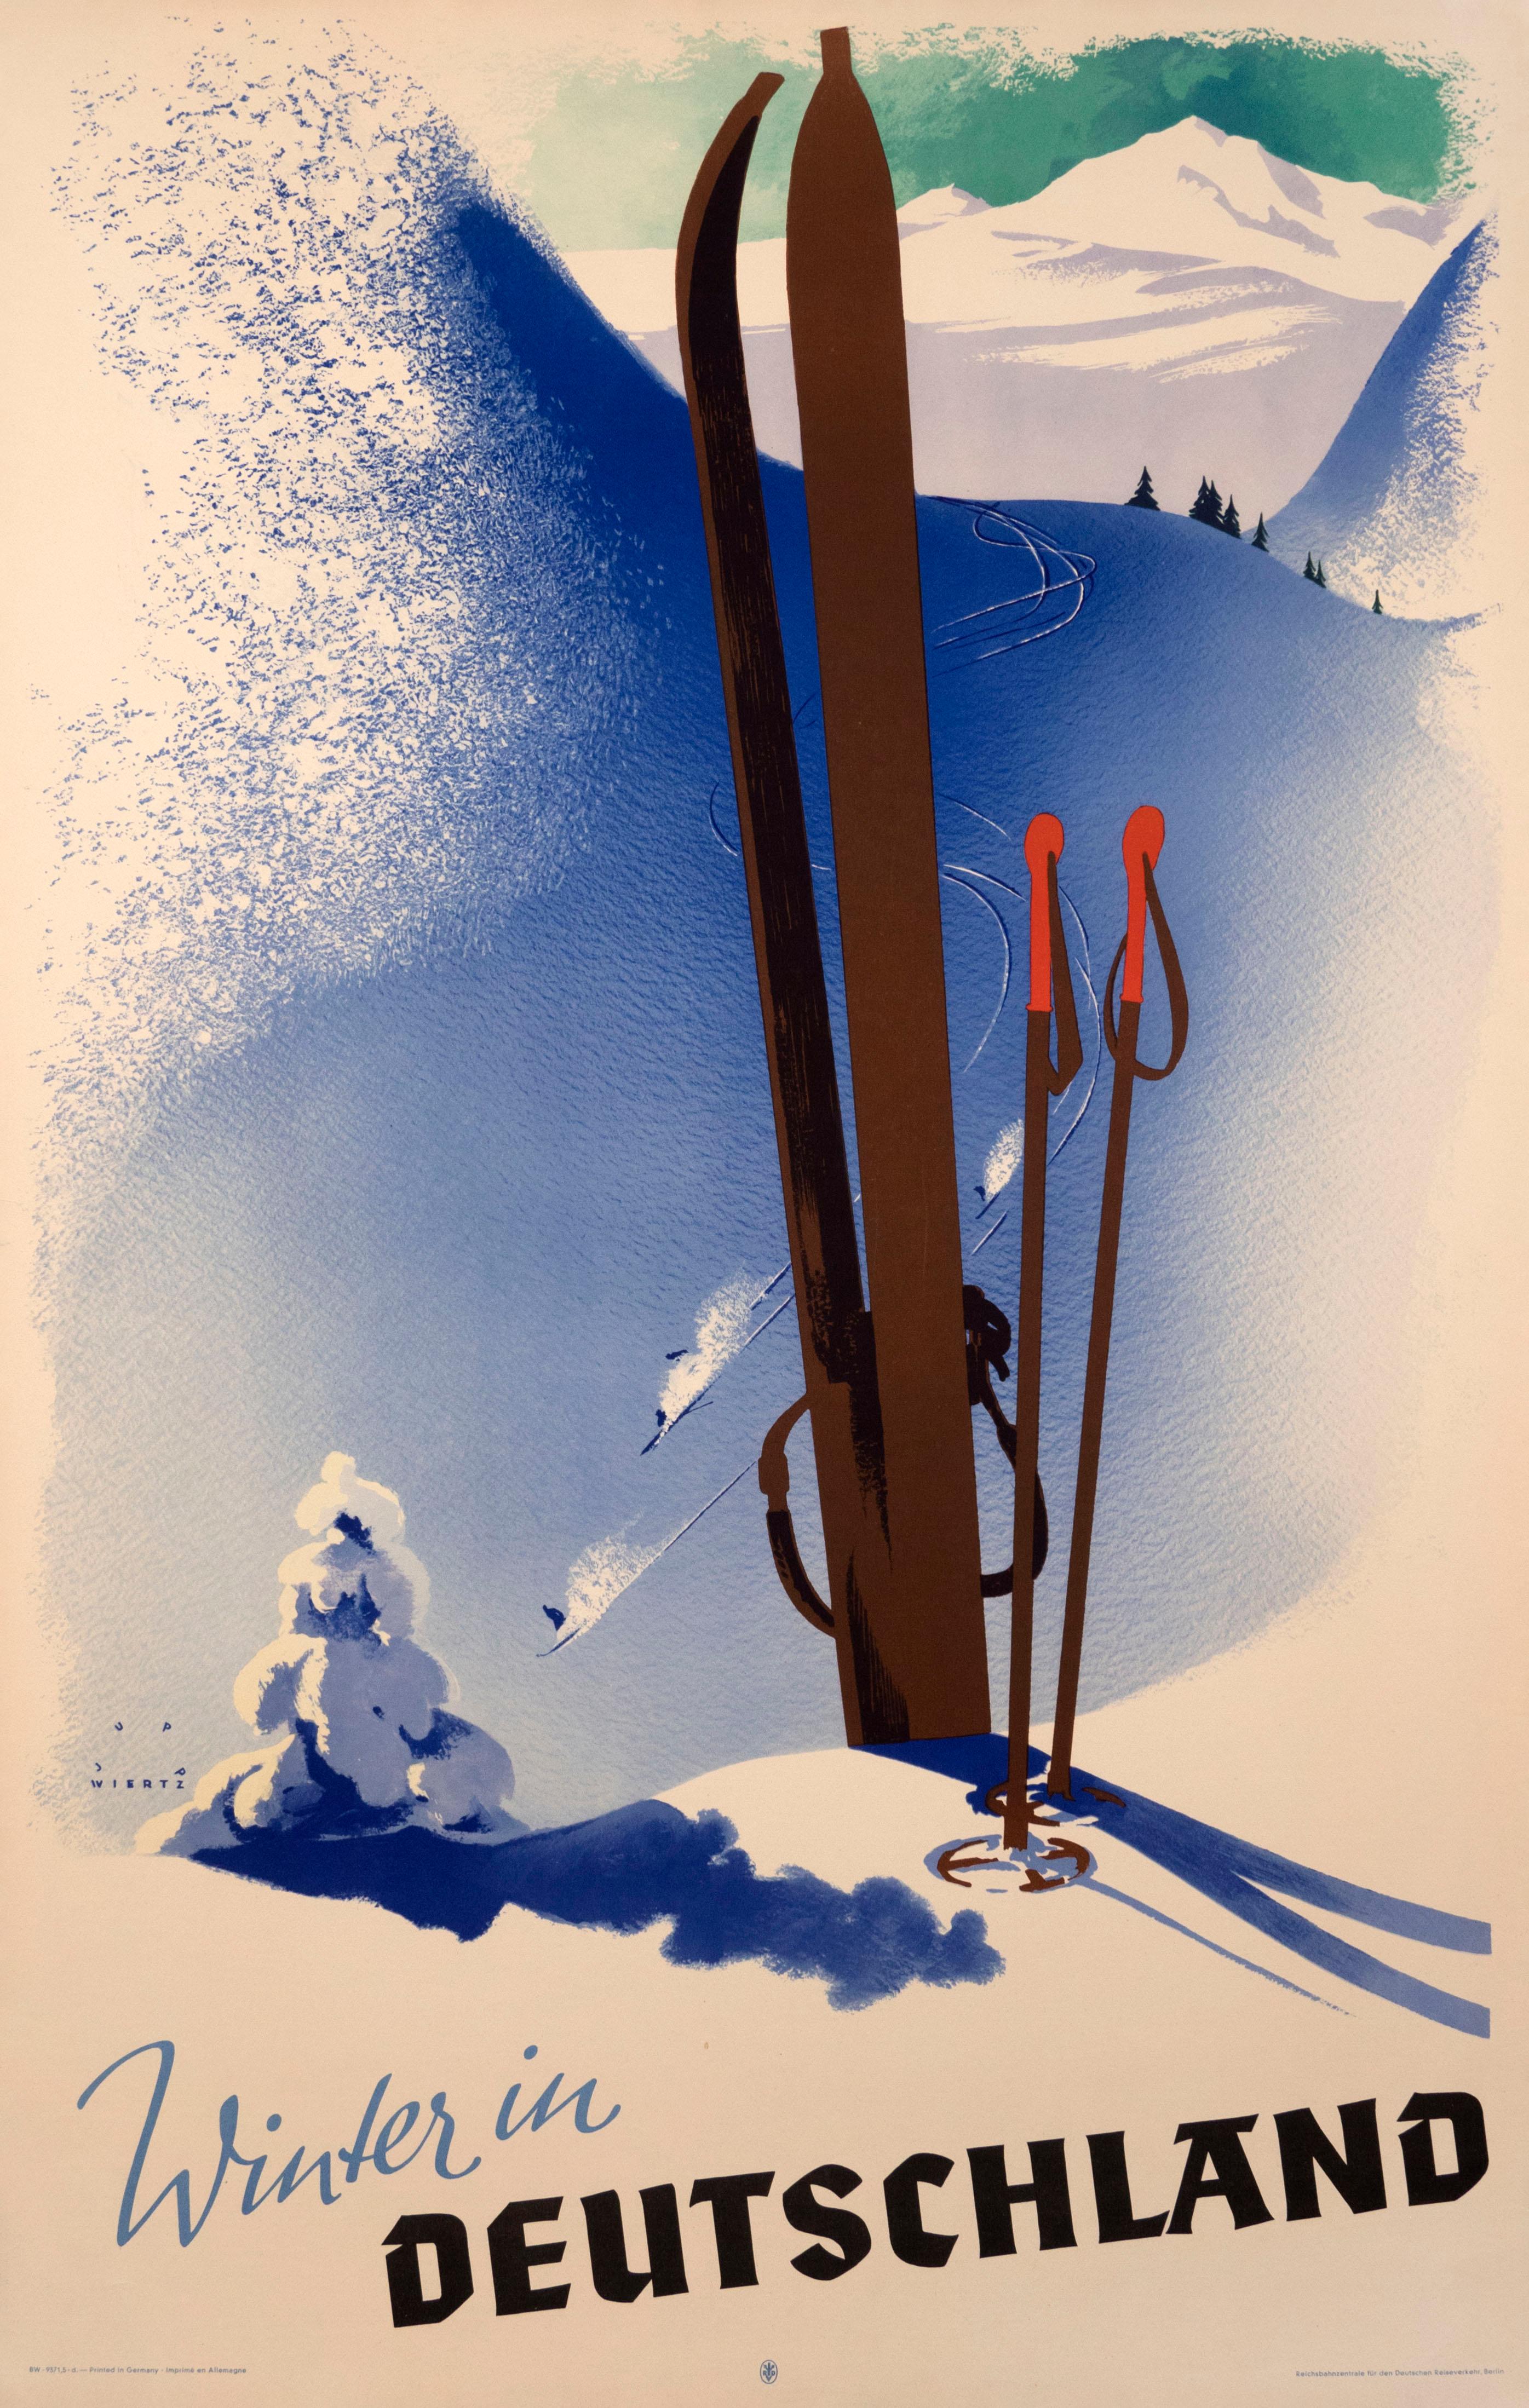 Jupp Wiertz Landscape Print - "Winter in Deutschland" German Art Deco 1930s Ski Original Vintage Poster